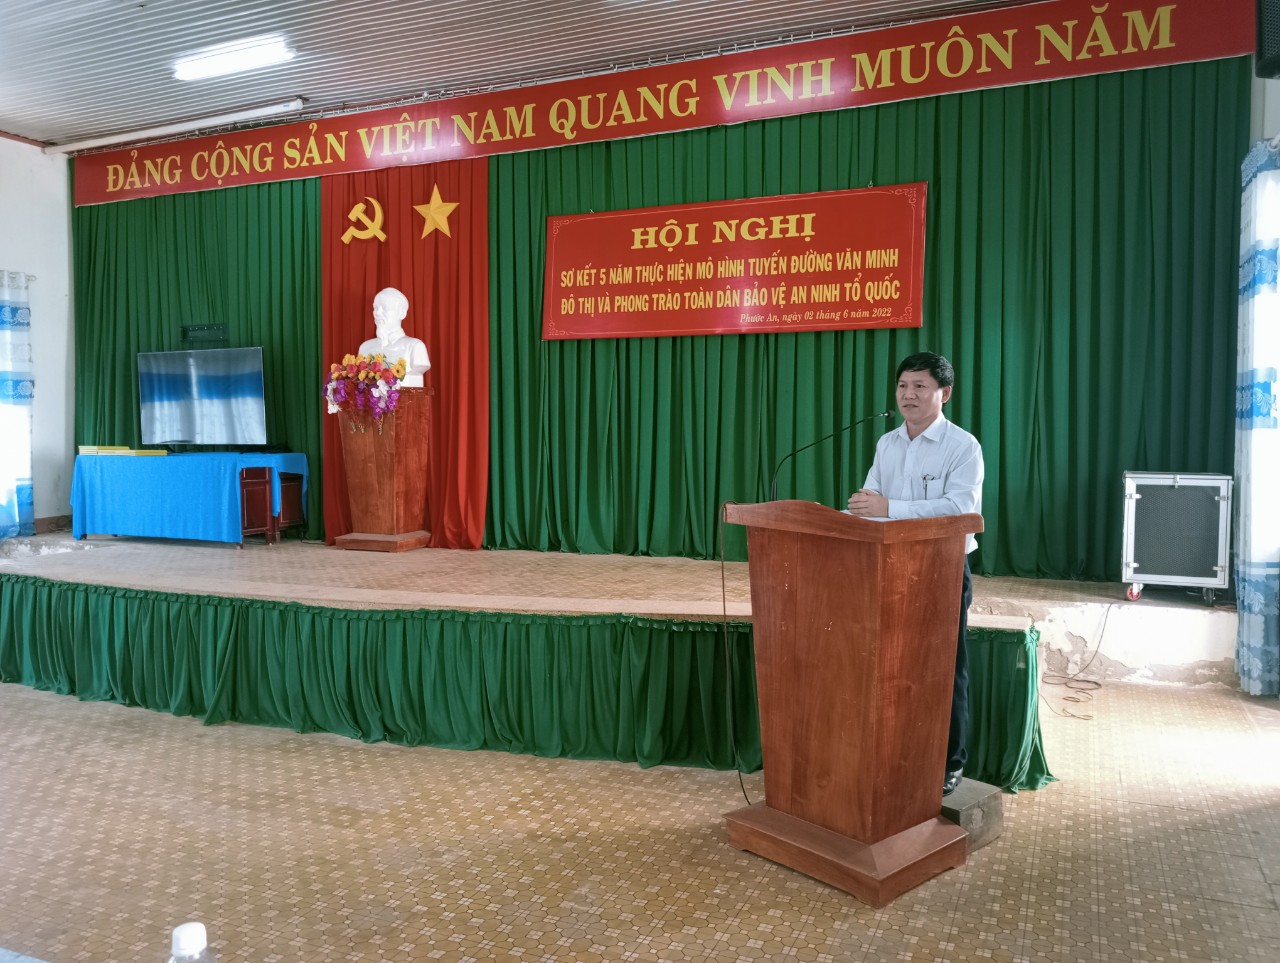 UBND thị trấn Phước An tổ chức Hội nghị sơ kết 5 năm thực hiện tiêu chí tuyến đường văn minh đô thị và cụm dân cư kiểu mẫu trên địa bàn thị trấn Phước An 